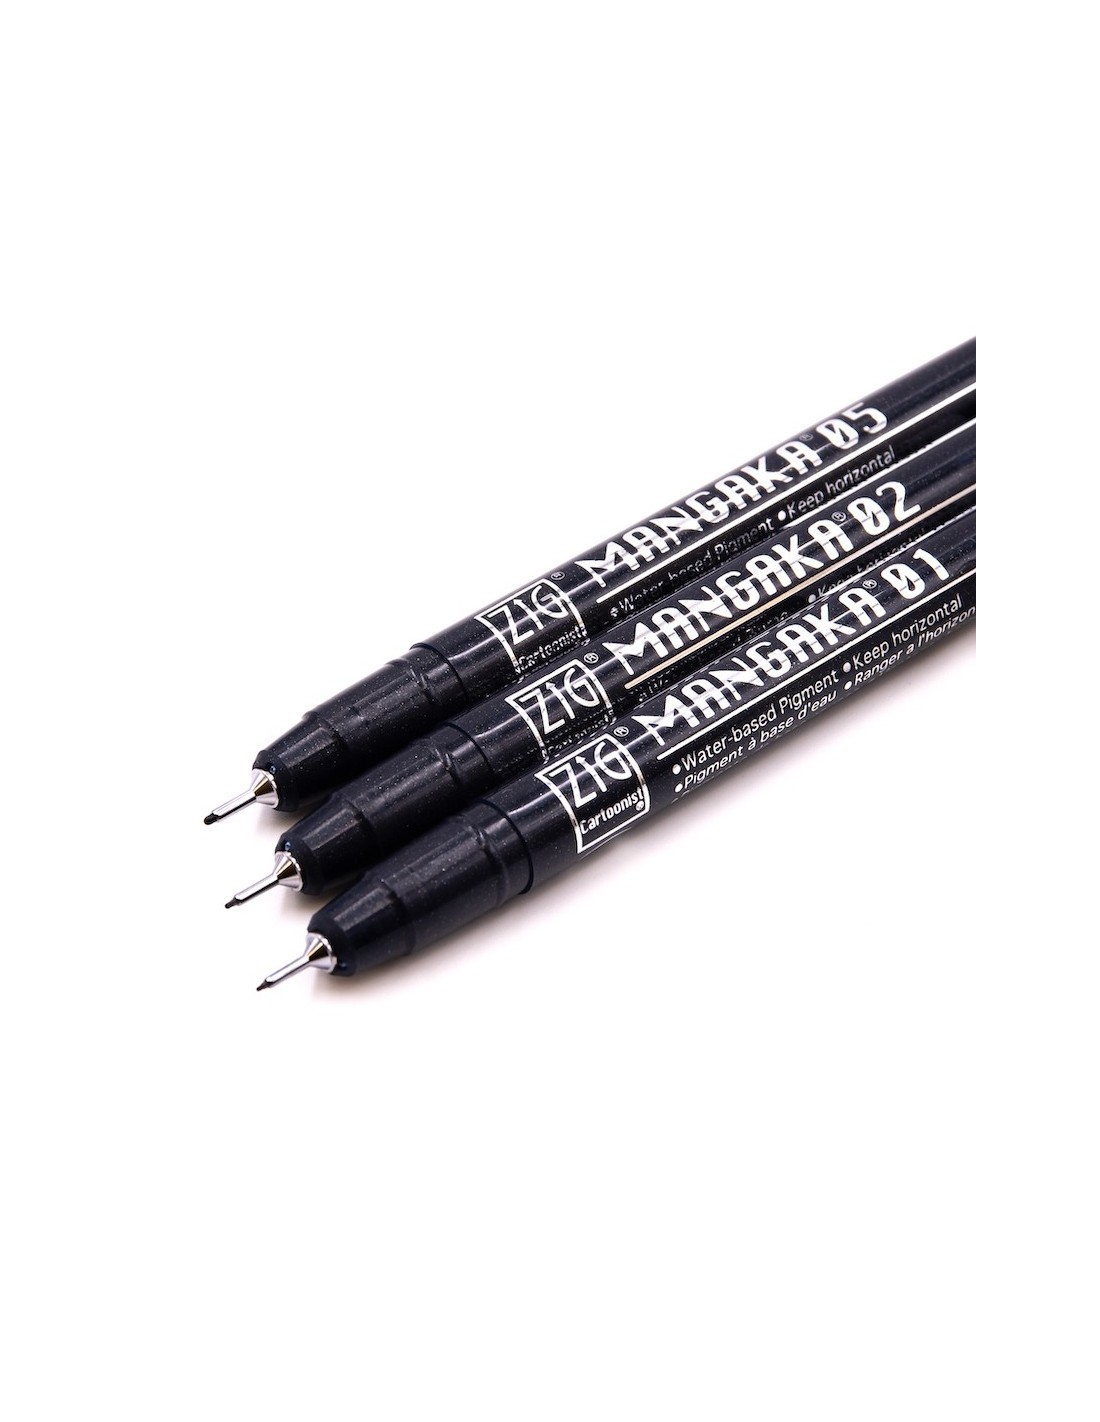 Kuretake Japanese Manga Pen Black - pack of 3 pens with tips of